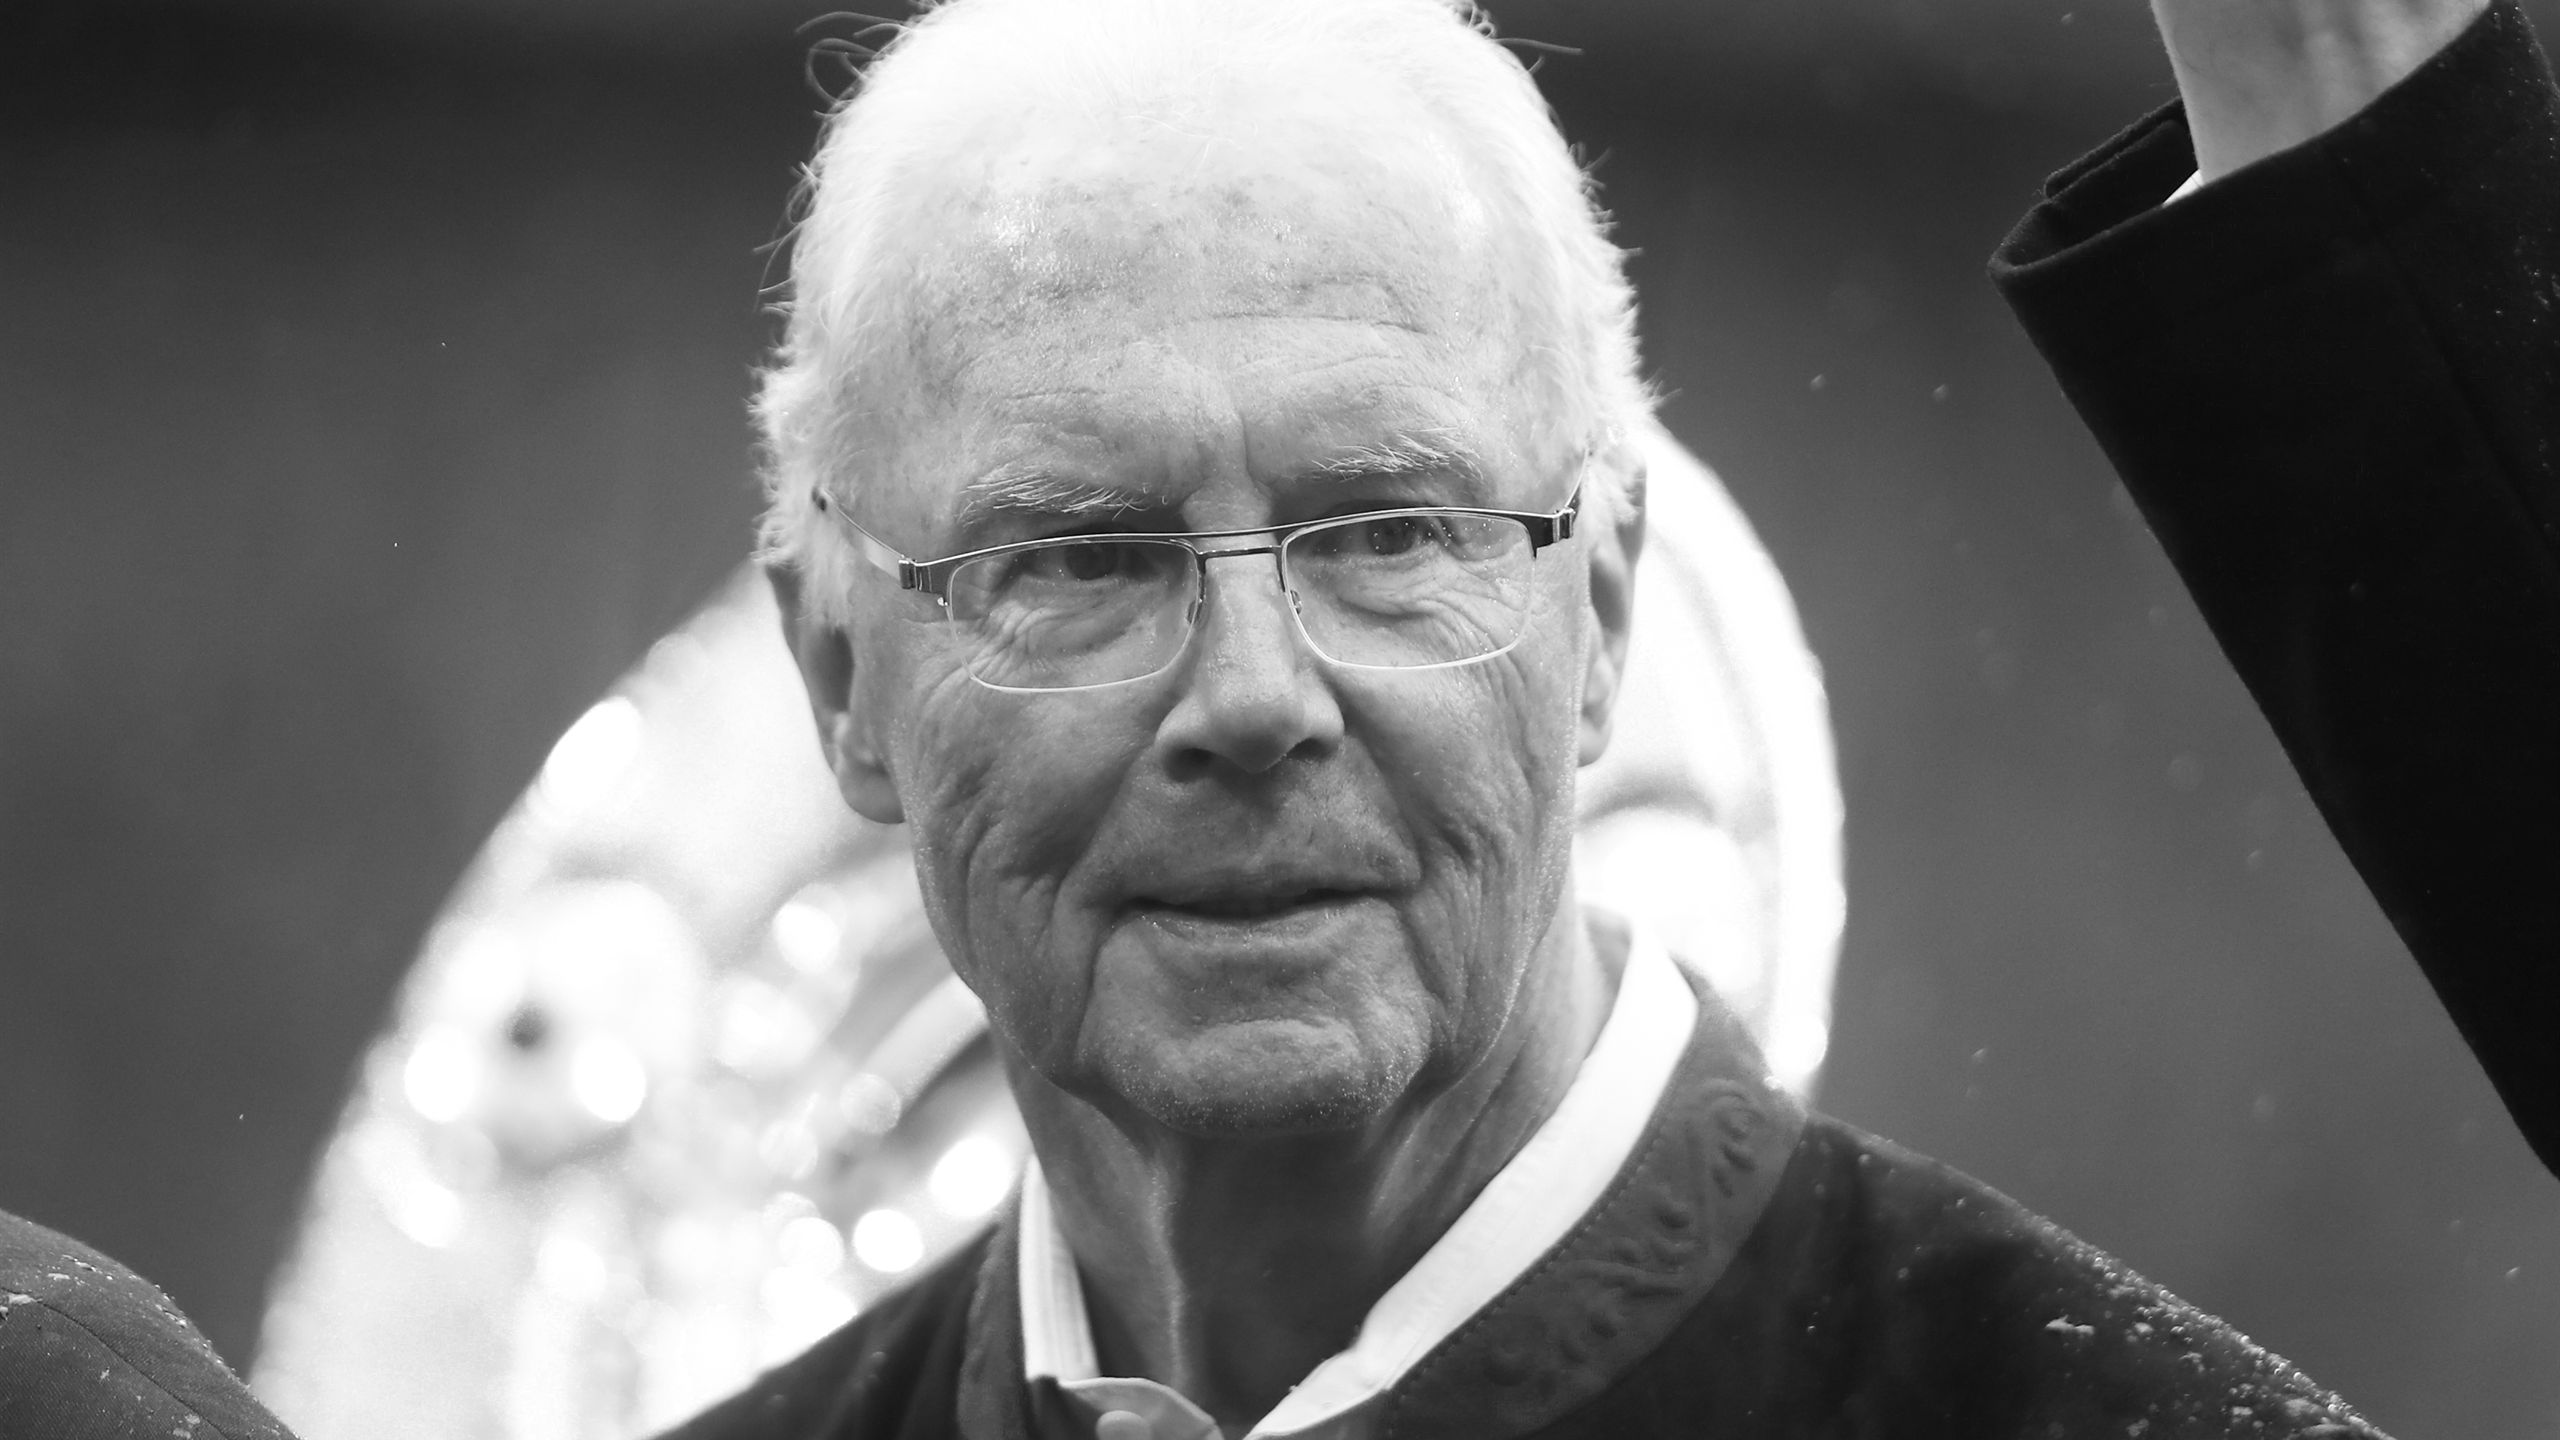 Franz Beckenbauer: World Cup winner and German football legend 